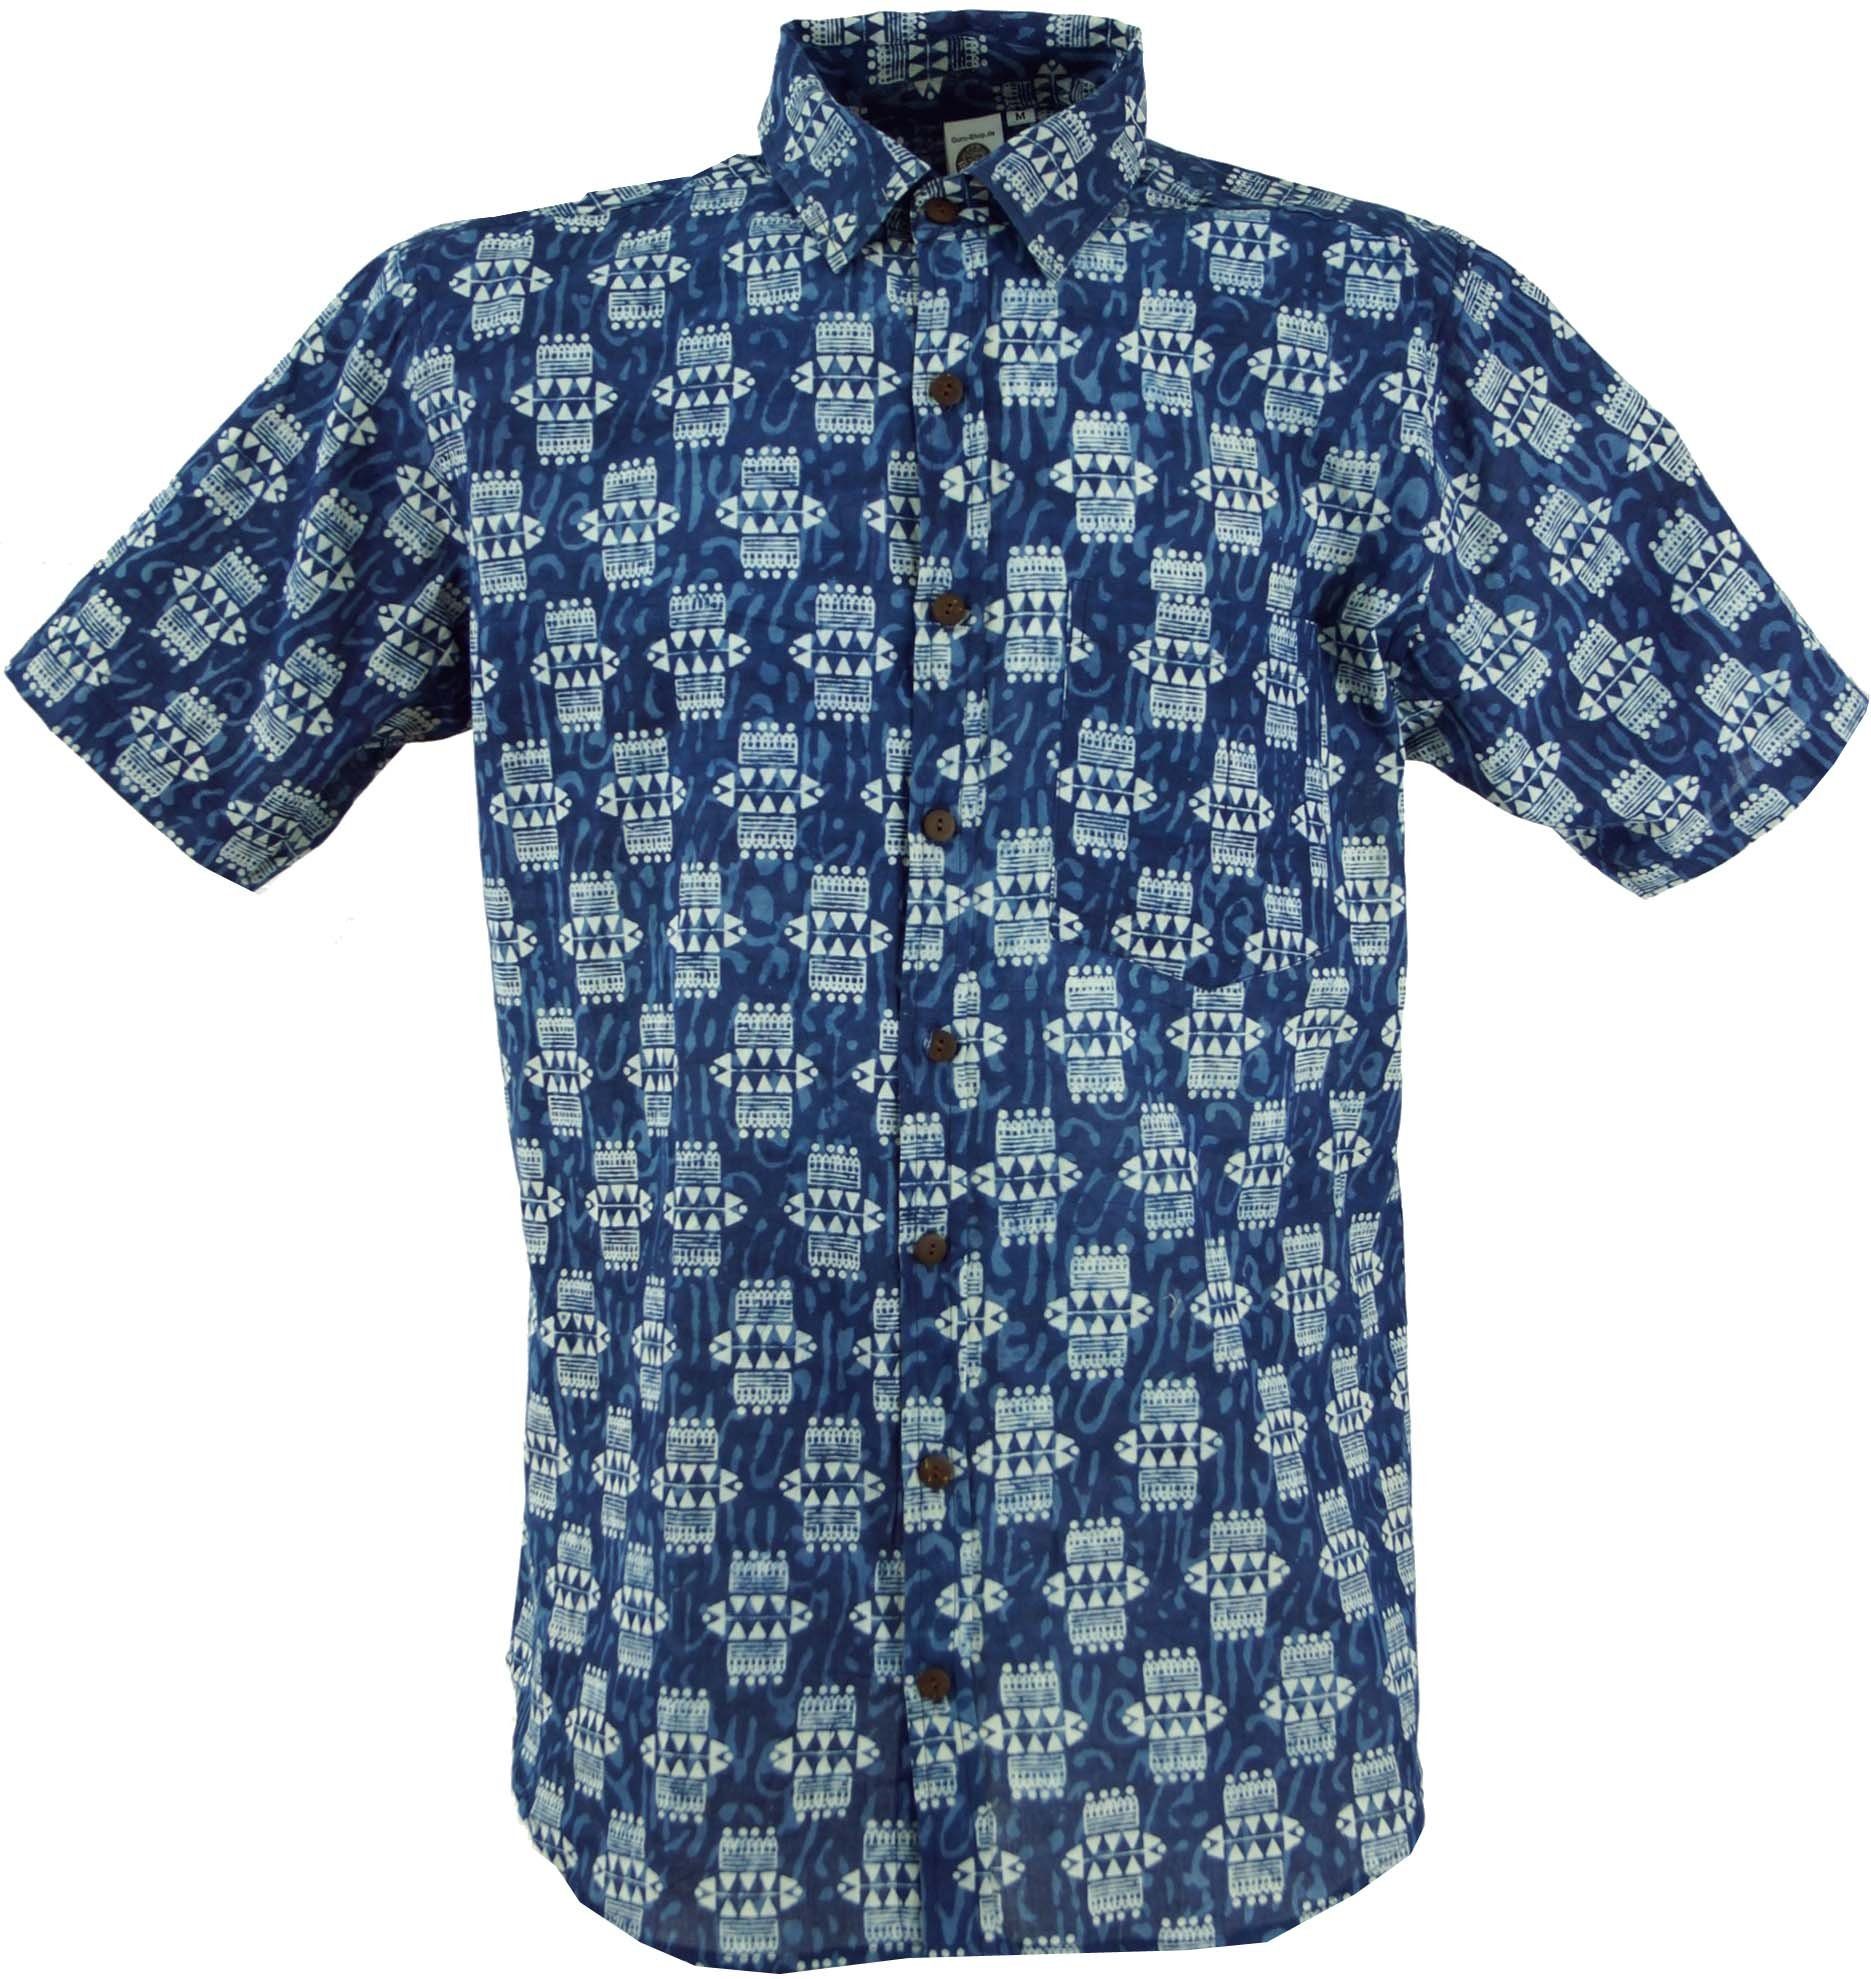 Guru-Shop Hemd & Shirt Freizeithemd, Goa Hippie Hemd, Kurzarm.. Retro, Ethno Style, alternative Bekleidung